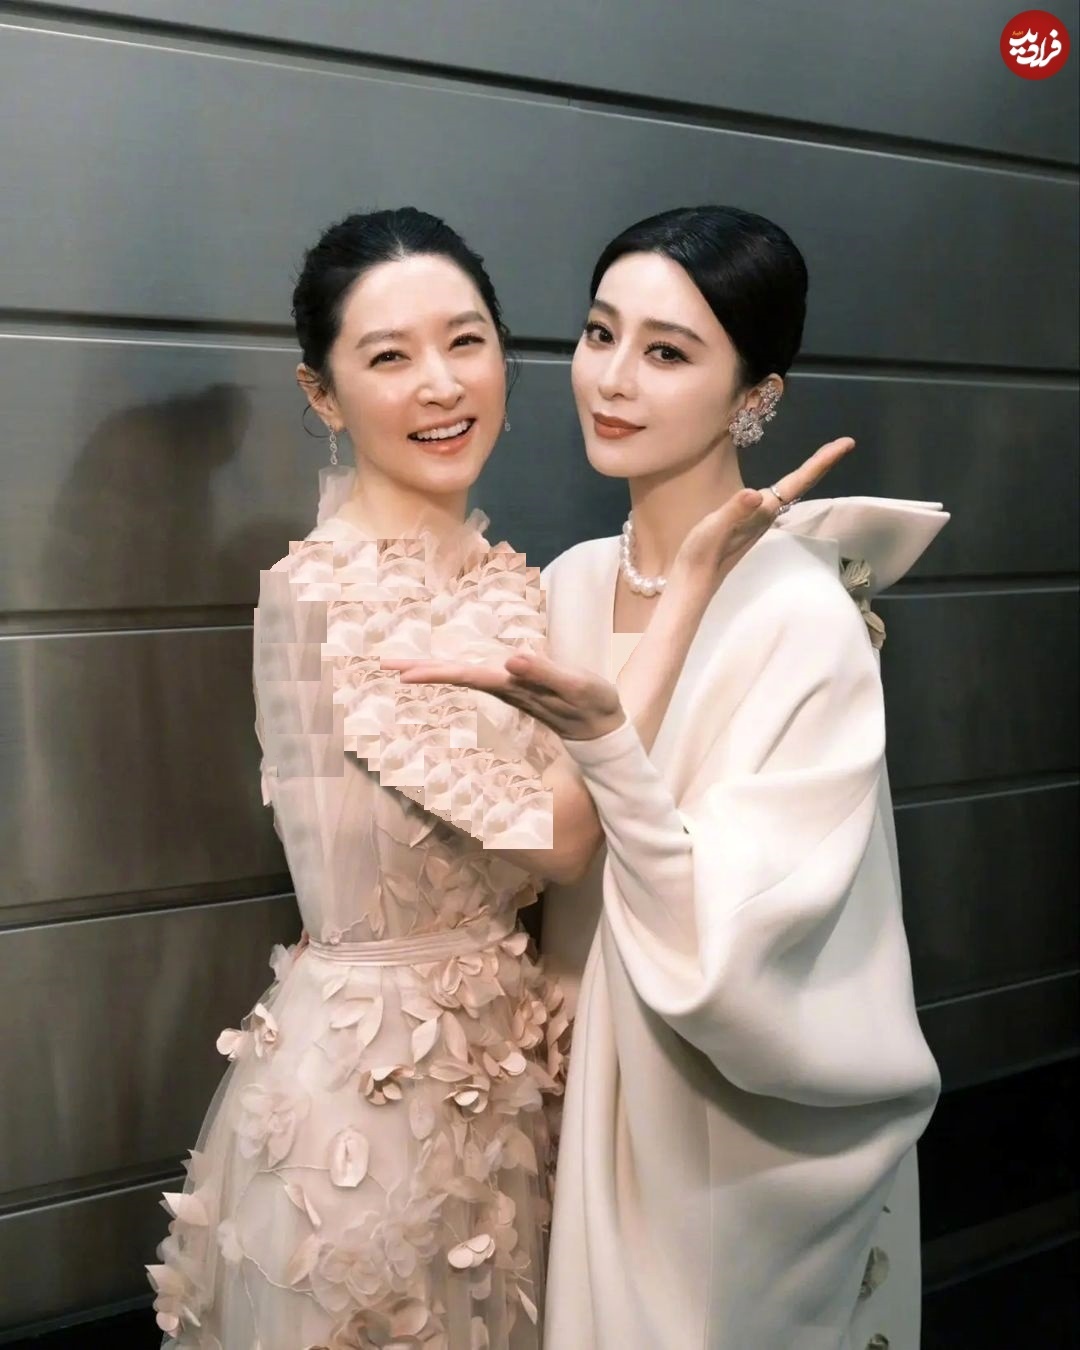 ژست صمیمانه «یانگوم» در کنار ستاره زیبای سینمای چین